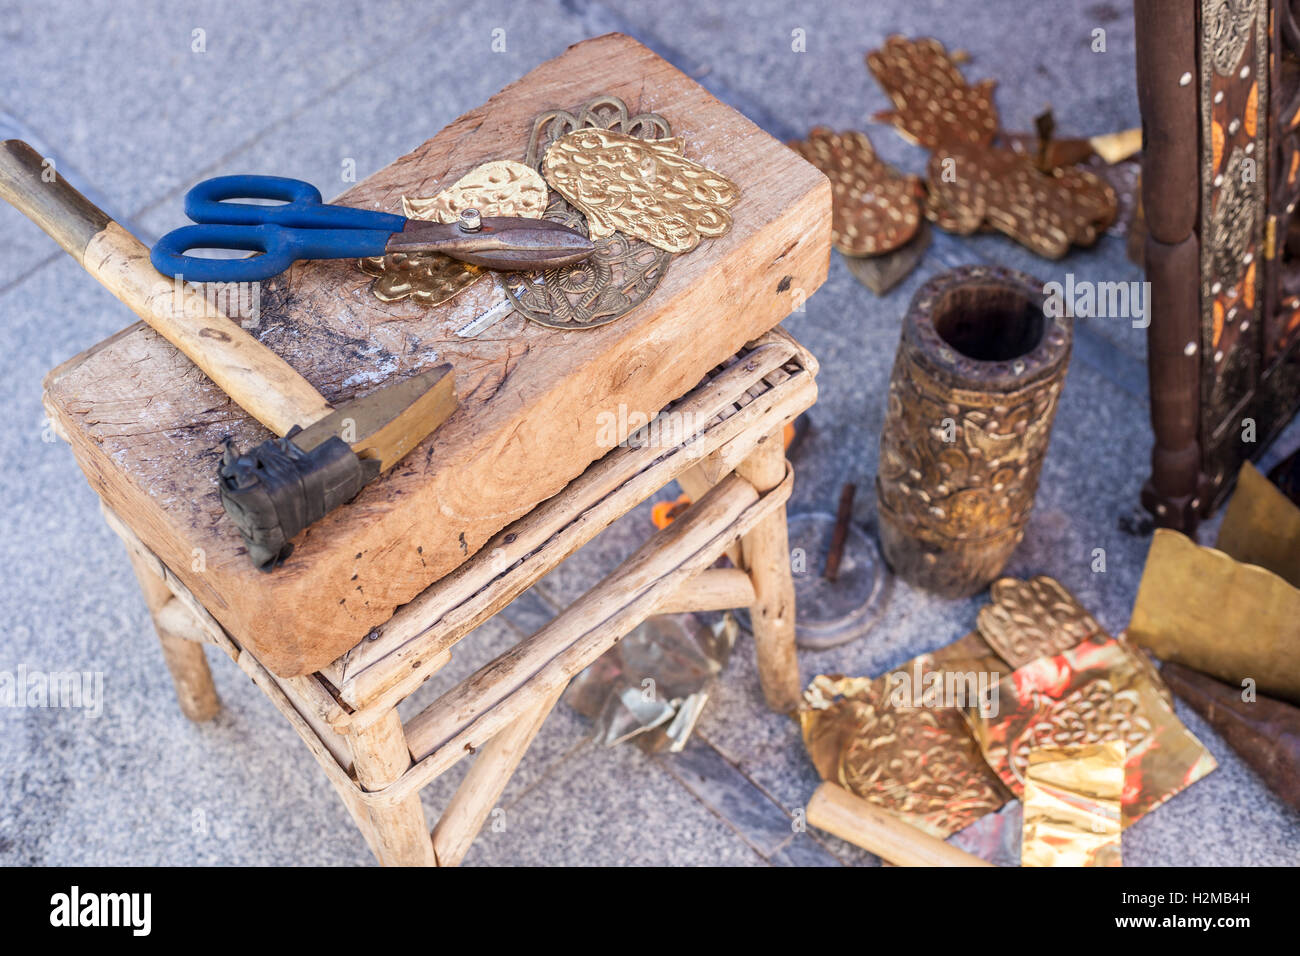 Handwerker-Bank mit Werkzeugen für Gravieren Hamsa Palm-förmigen Messing Amulette Stockfoto